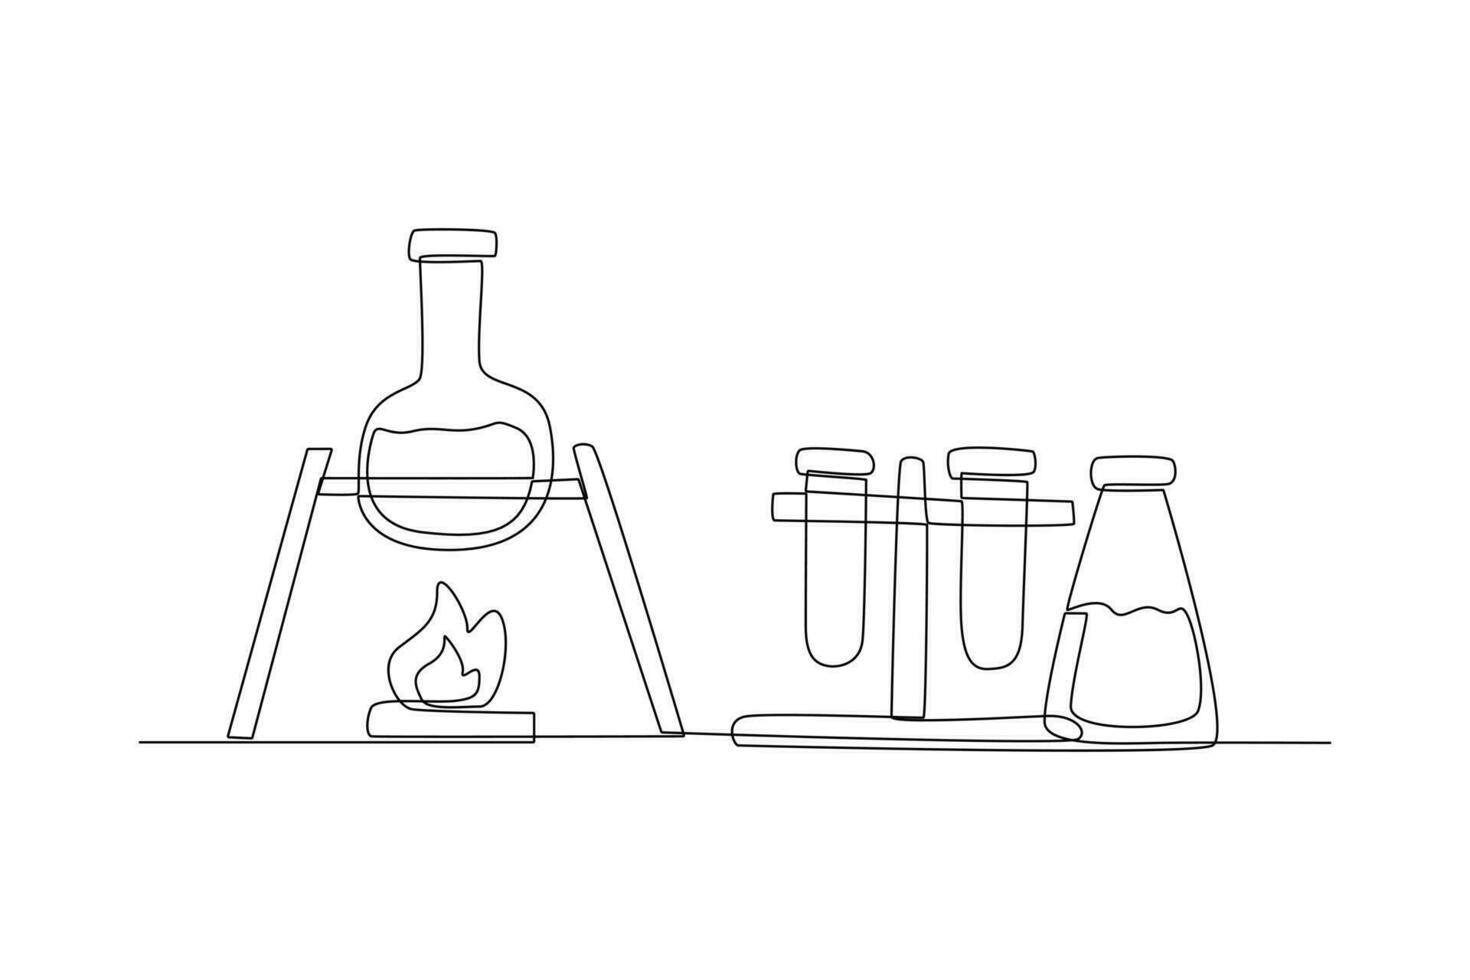 ett kontinuerlig linje teckning av kemi och fysik laboratorium Utrustning begrepp. klotter vektor illustration i enkel linjär stil.